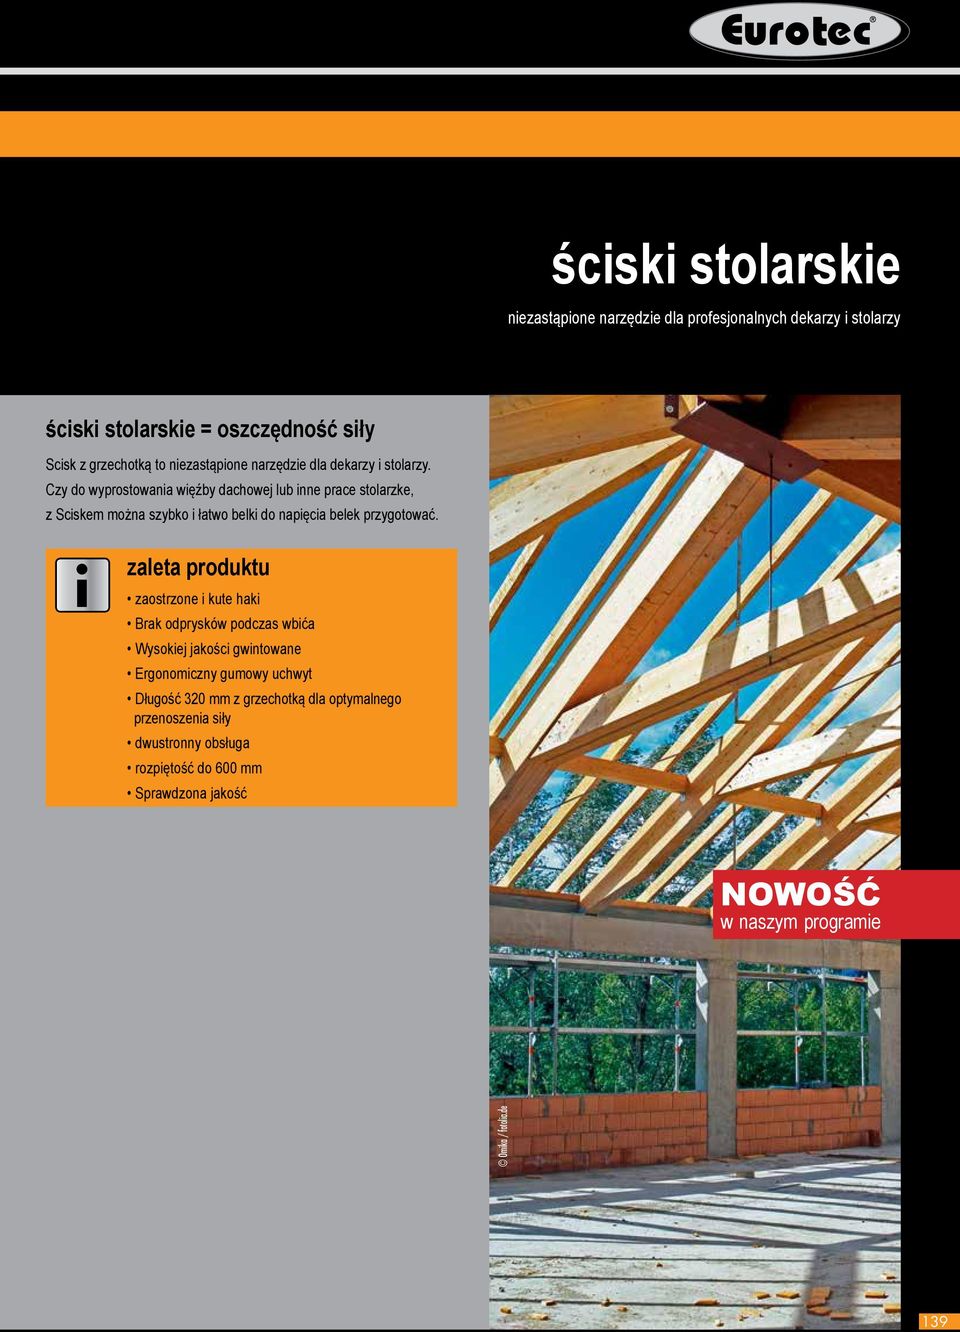 Czy do wyprostowana węźby dachowej lub nne prace stolarzke, z Scskem można szybko łatwo belk do napęca belek przygotować.